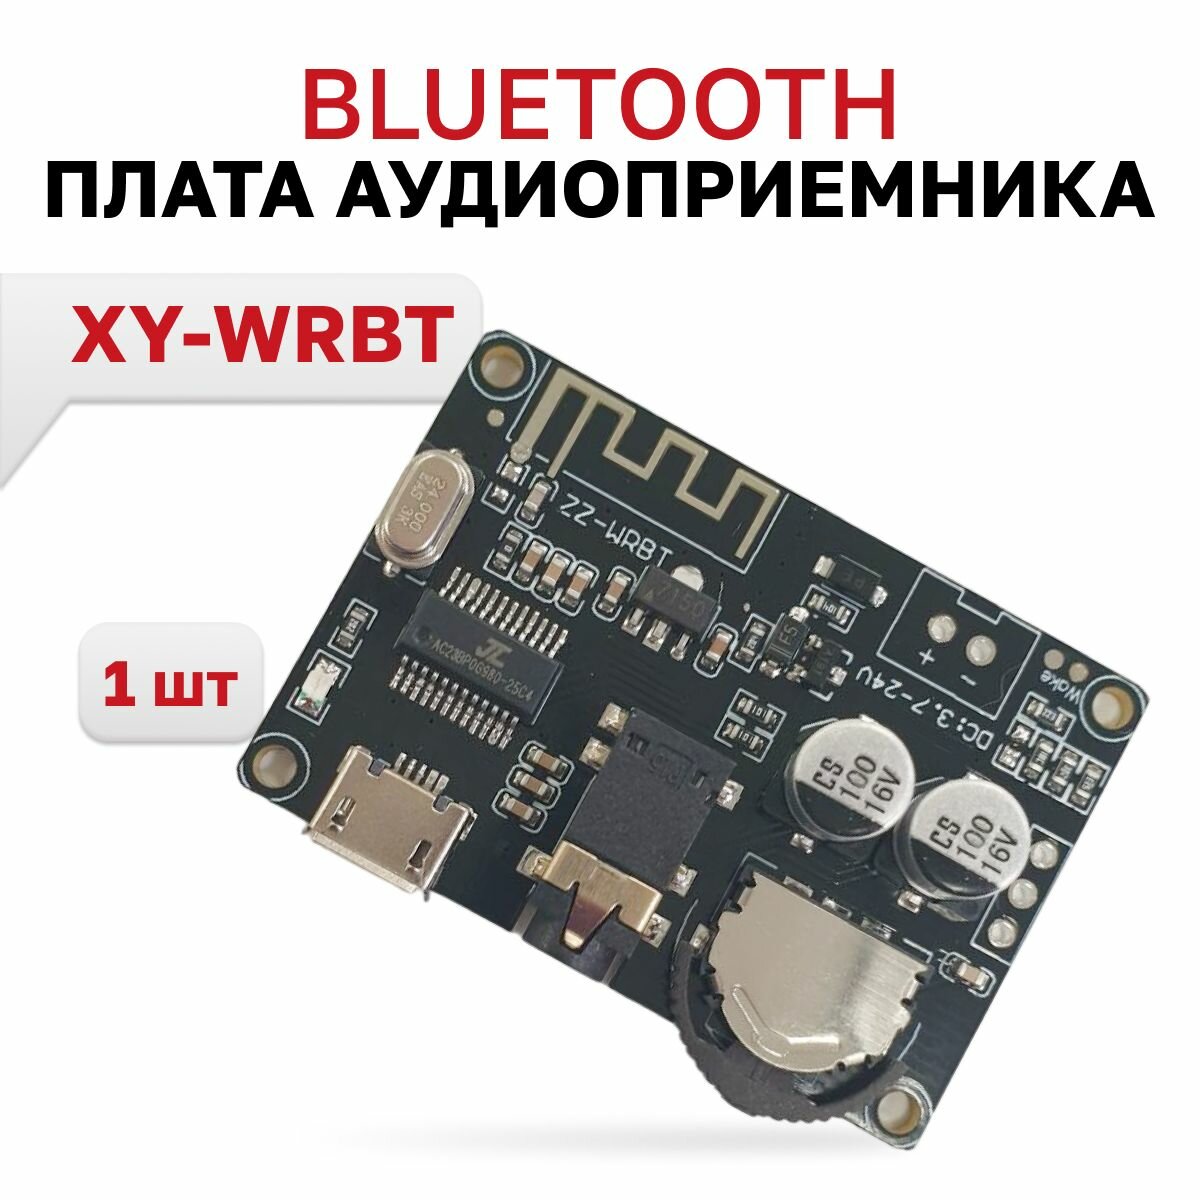 Модуль MP3 Bluetooth (XY-WRBT) Bluetooth приемник, декодер, плата, 1 шт.